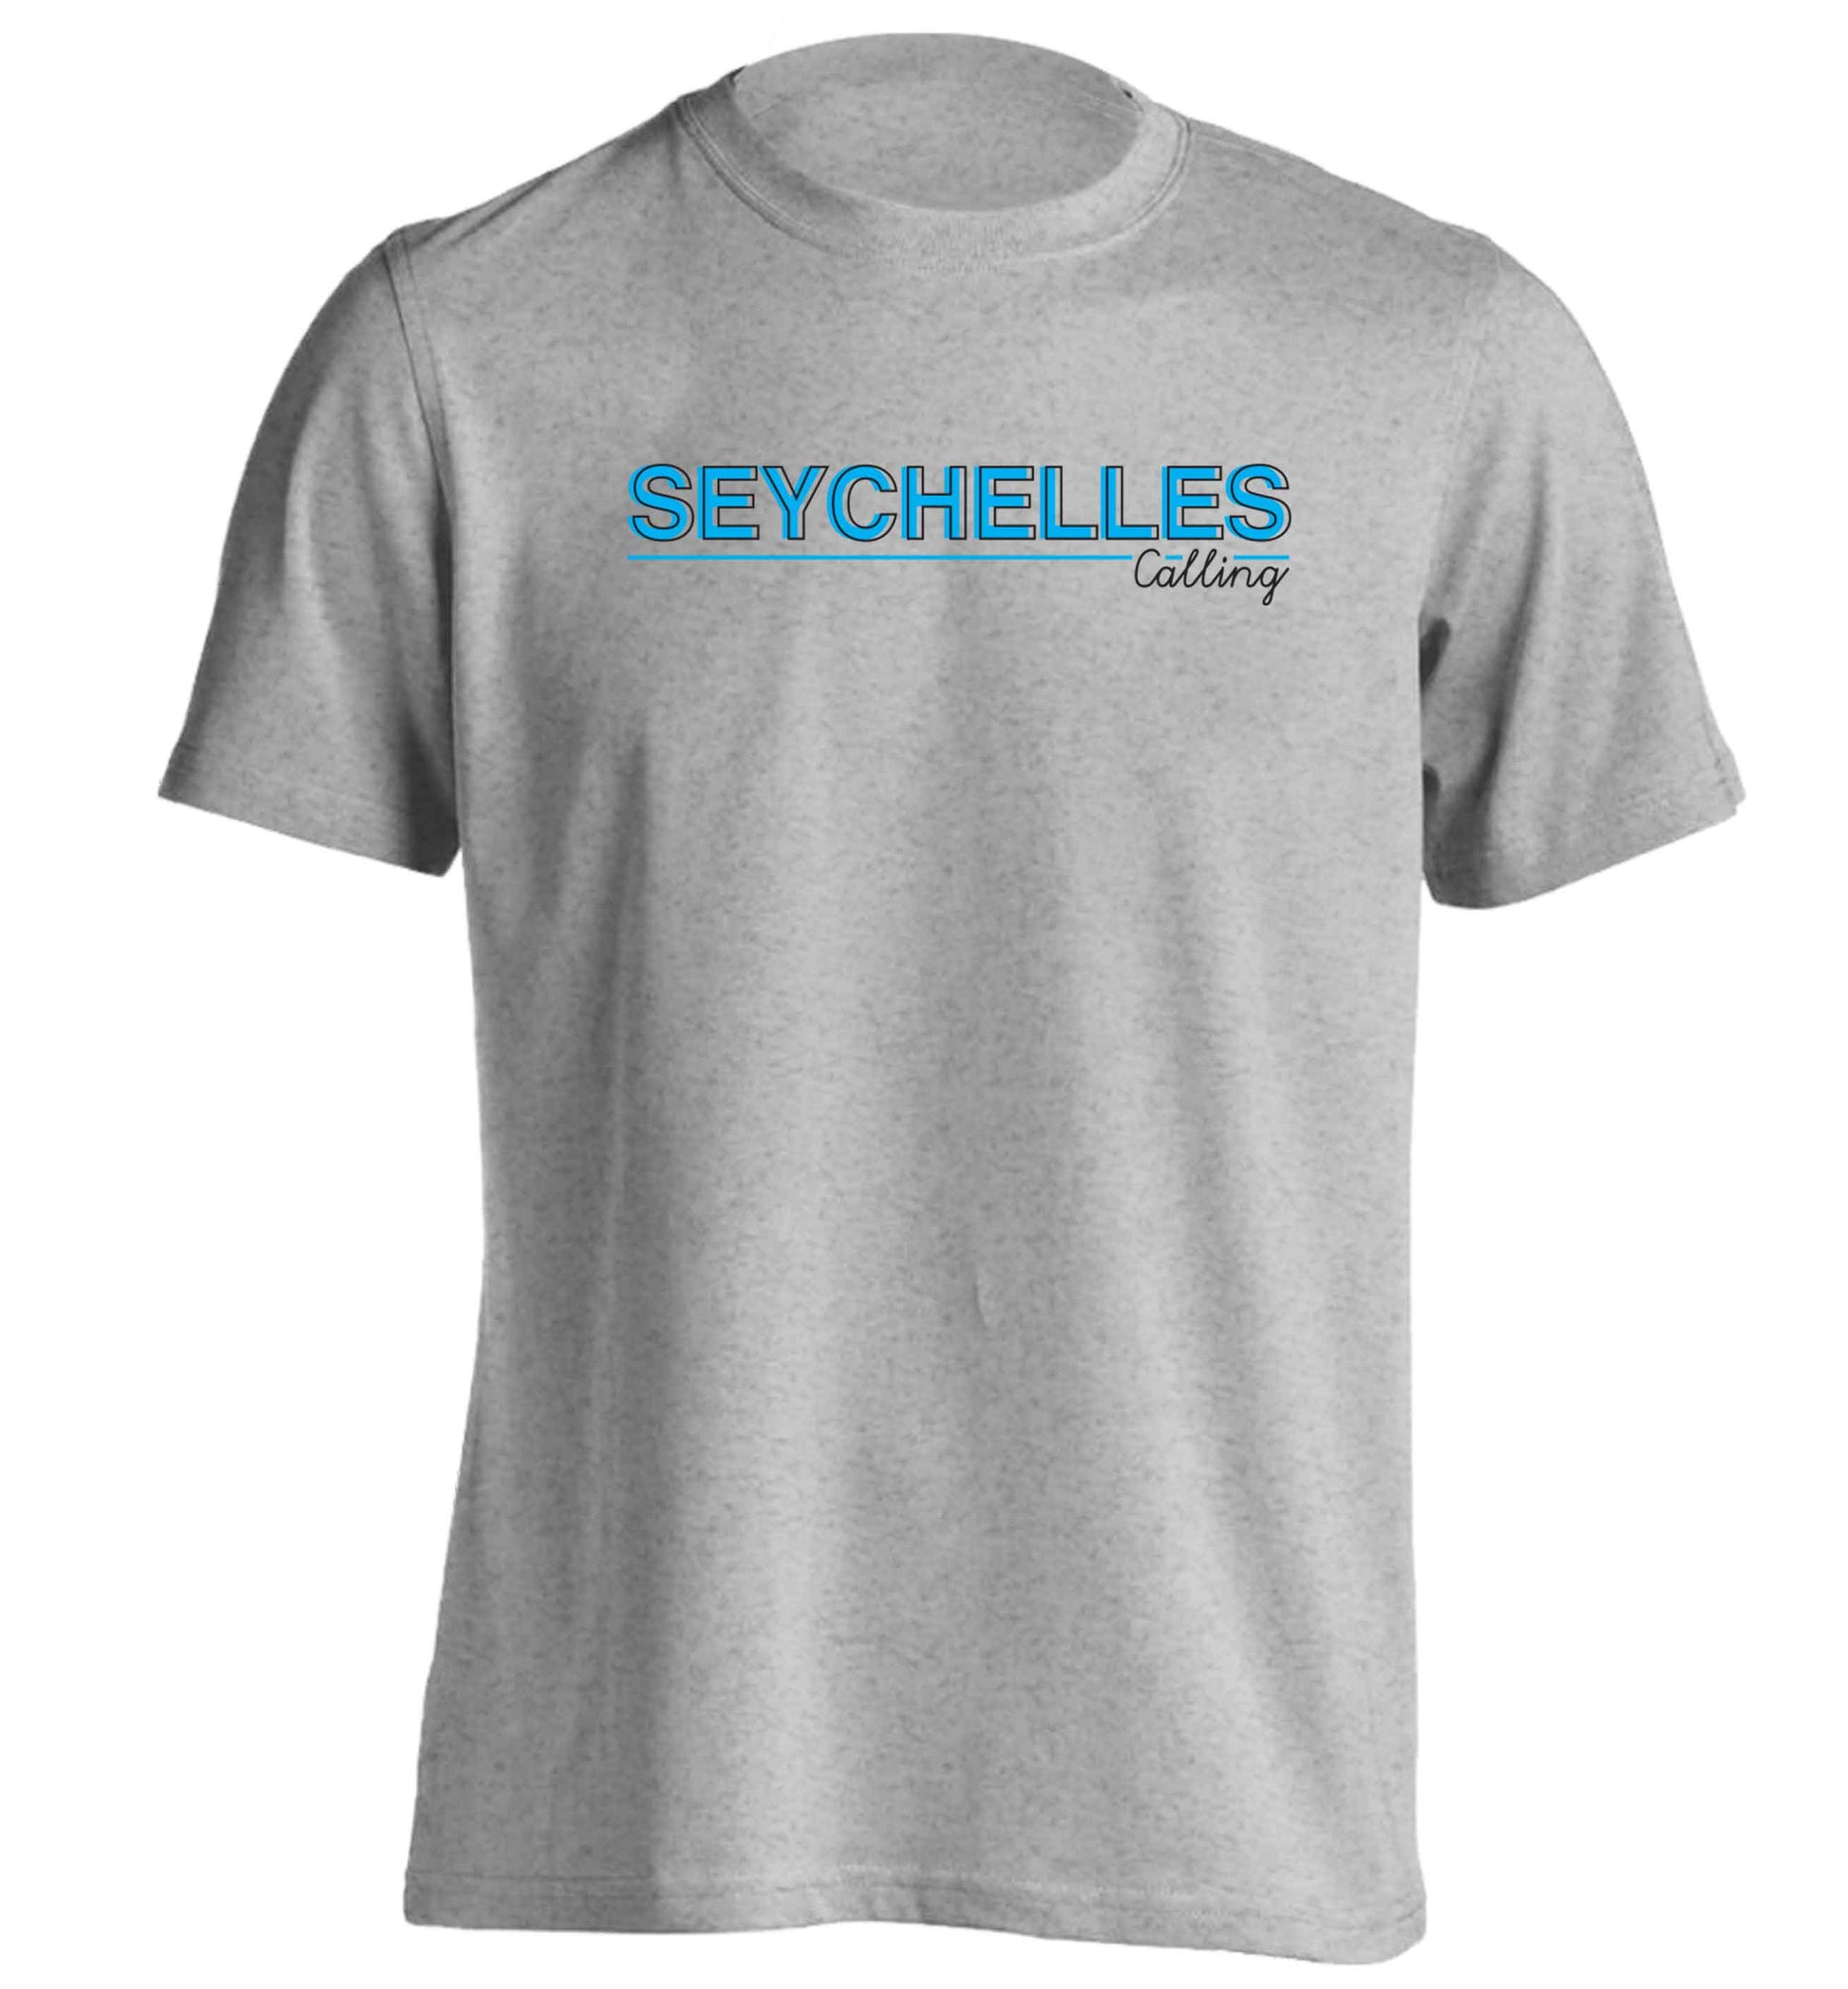 Seychelles calling adults unisex grey Tshirt 2XL